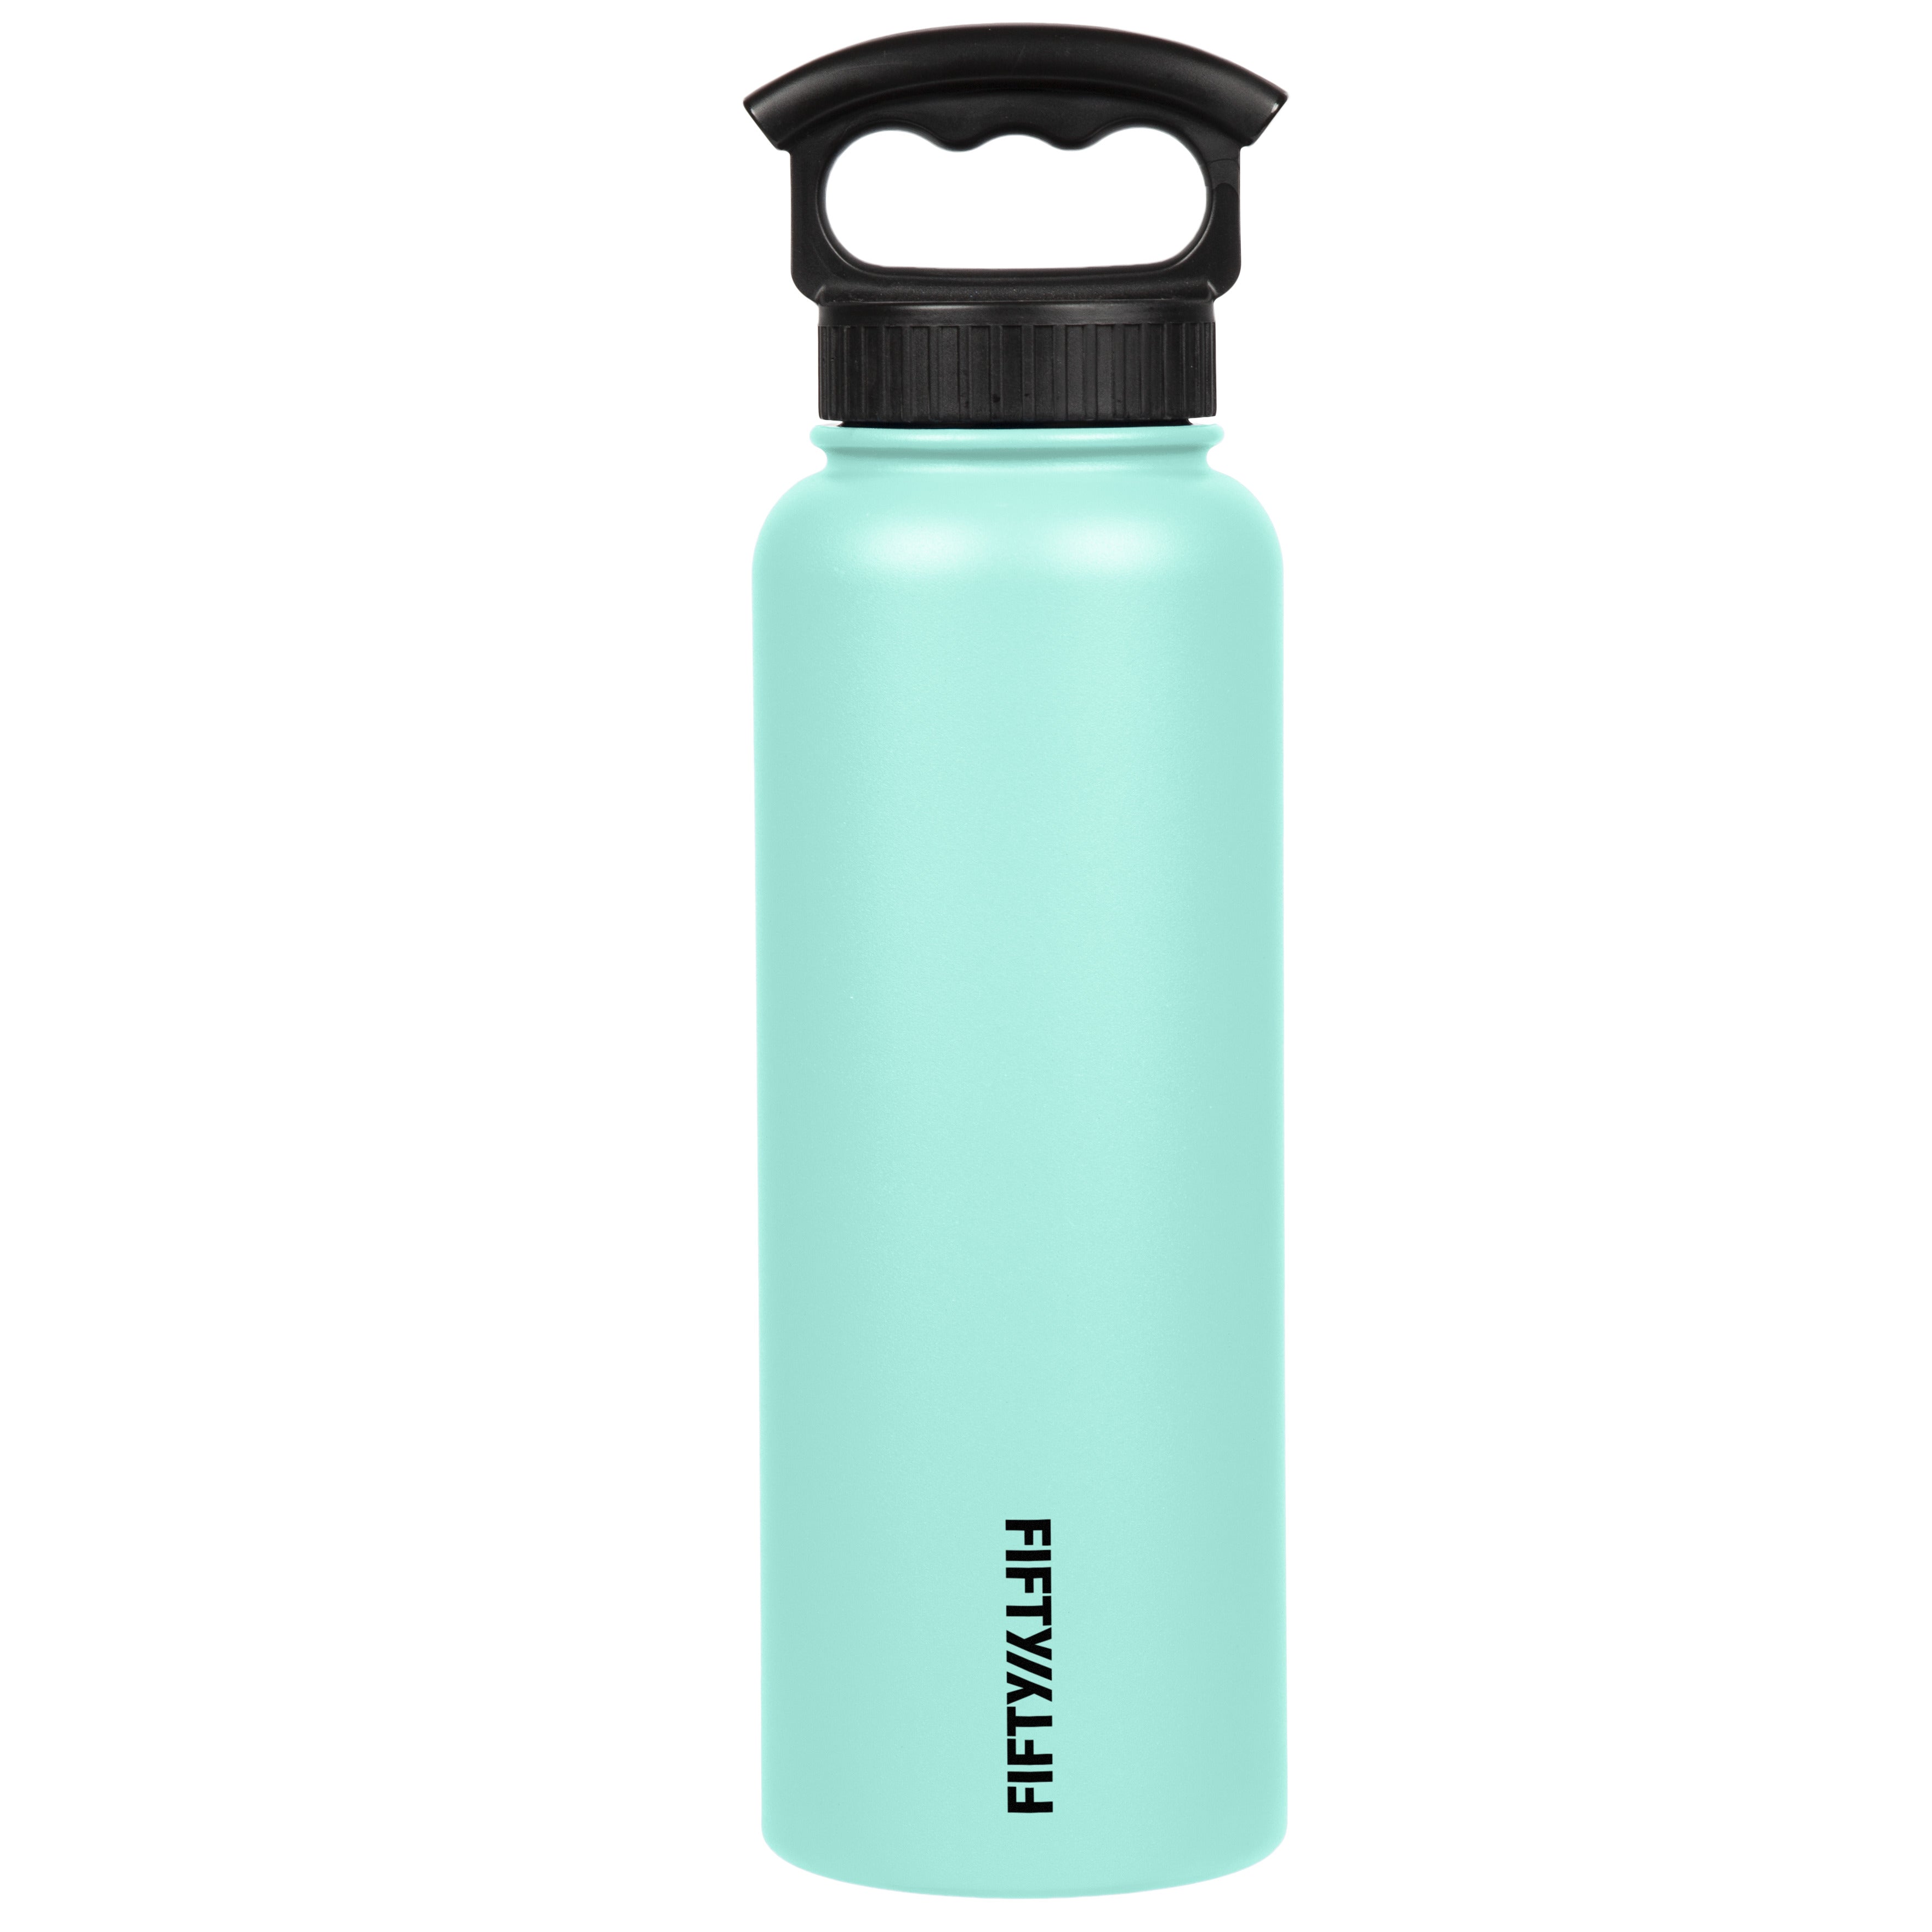 40OZ Hydro Flask Water Bottle w/ Straw Lid Stainless Steel Vacuum Bottle